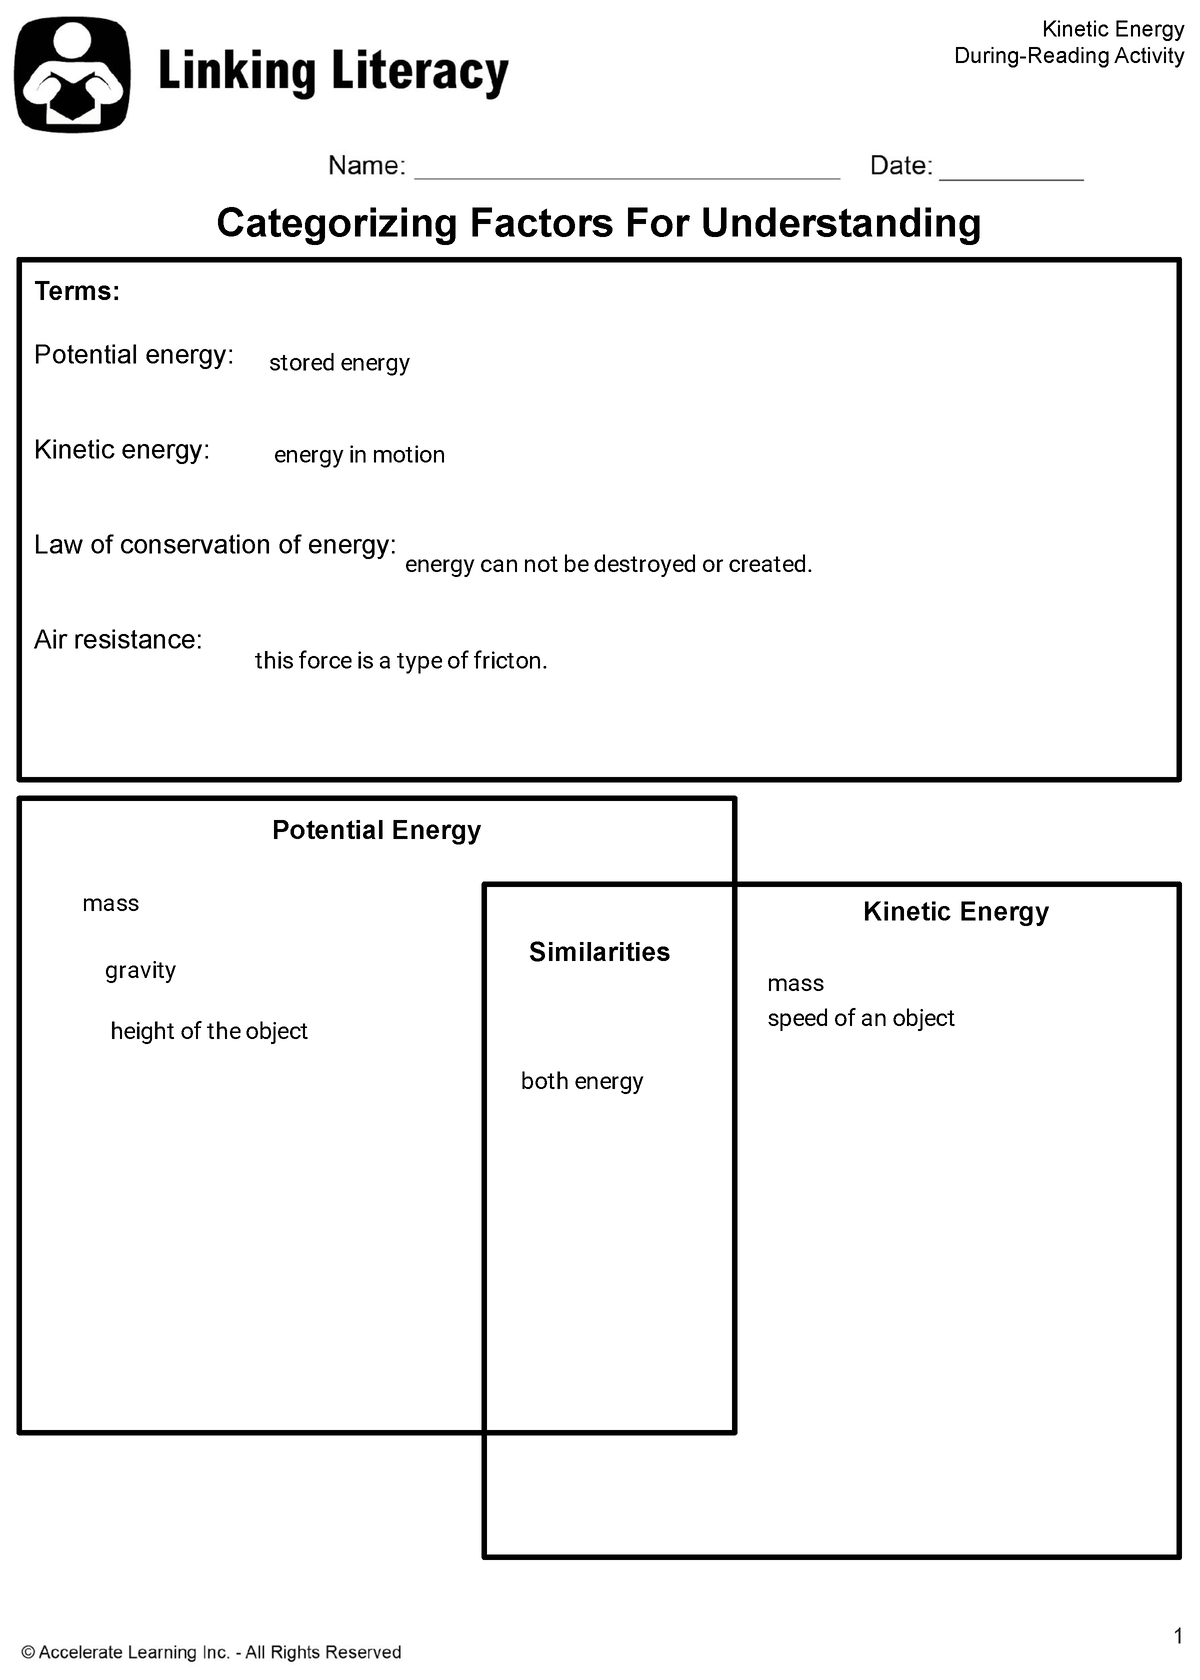 brittney-filyaw-sc3d-7-kinetic-energy-explain-linking-literacy-categorizing-factors-for-studocu